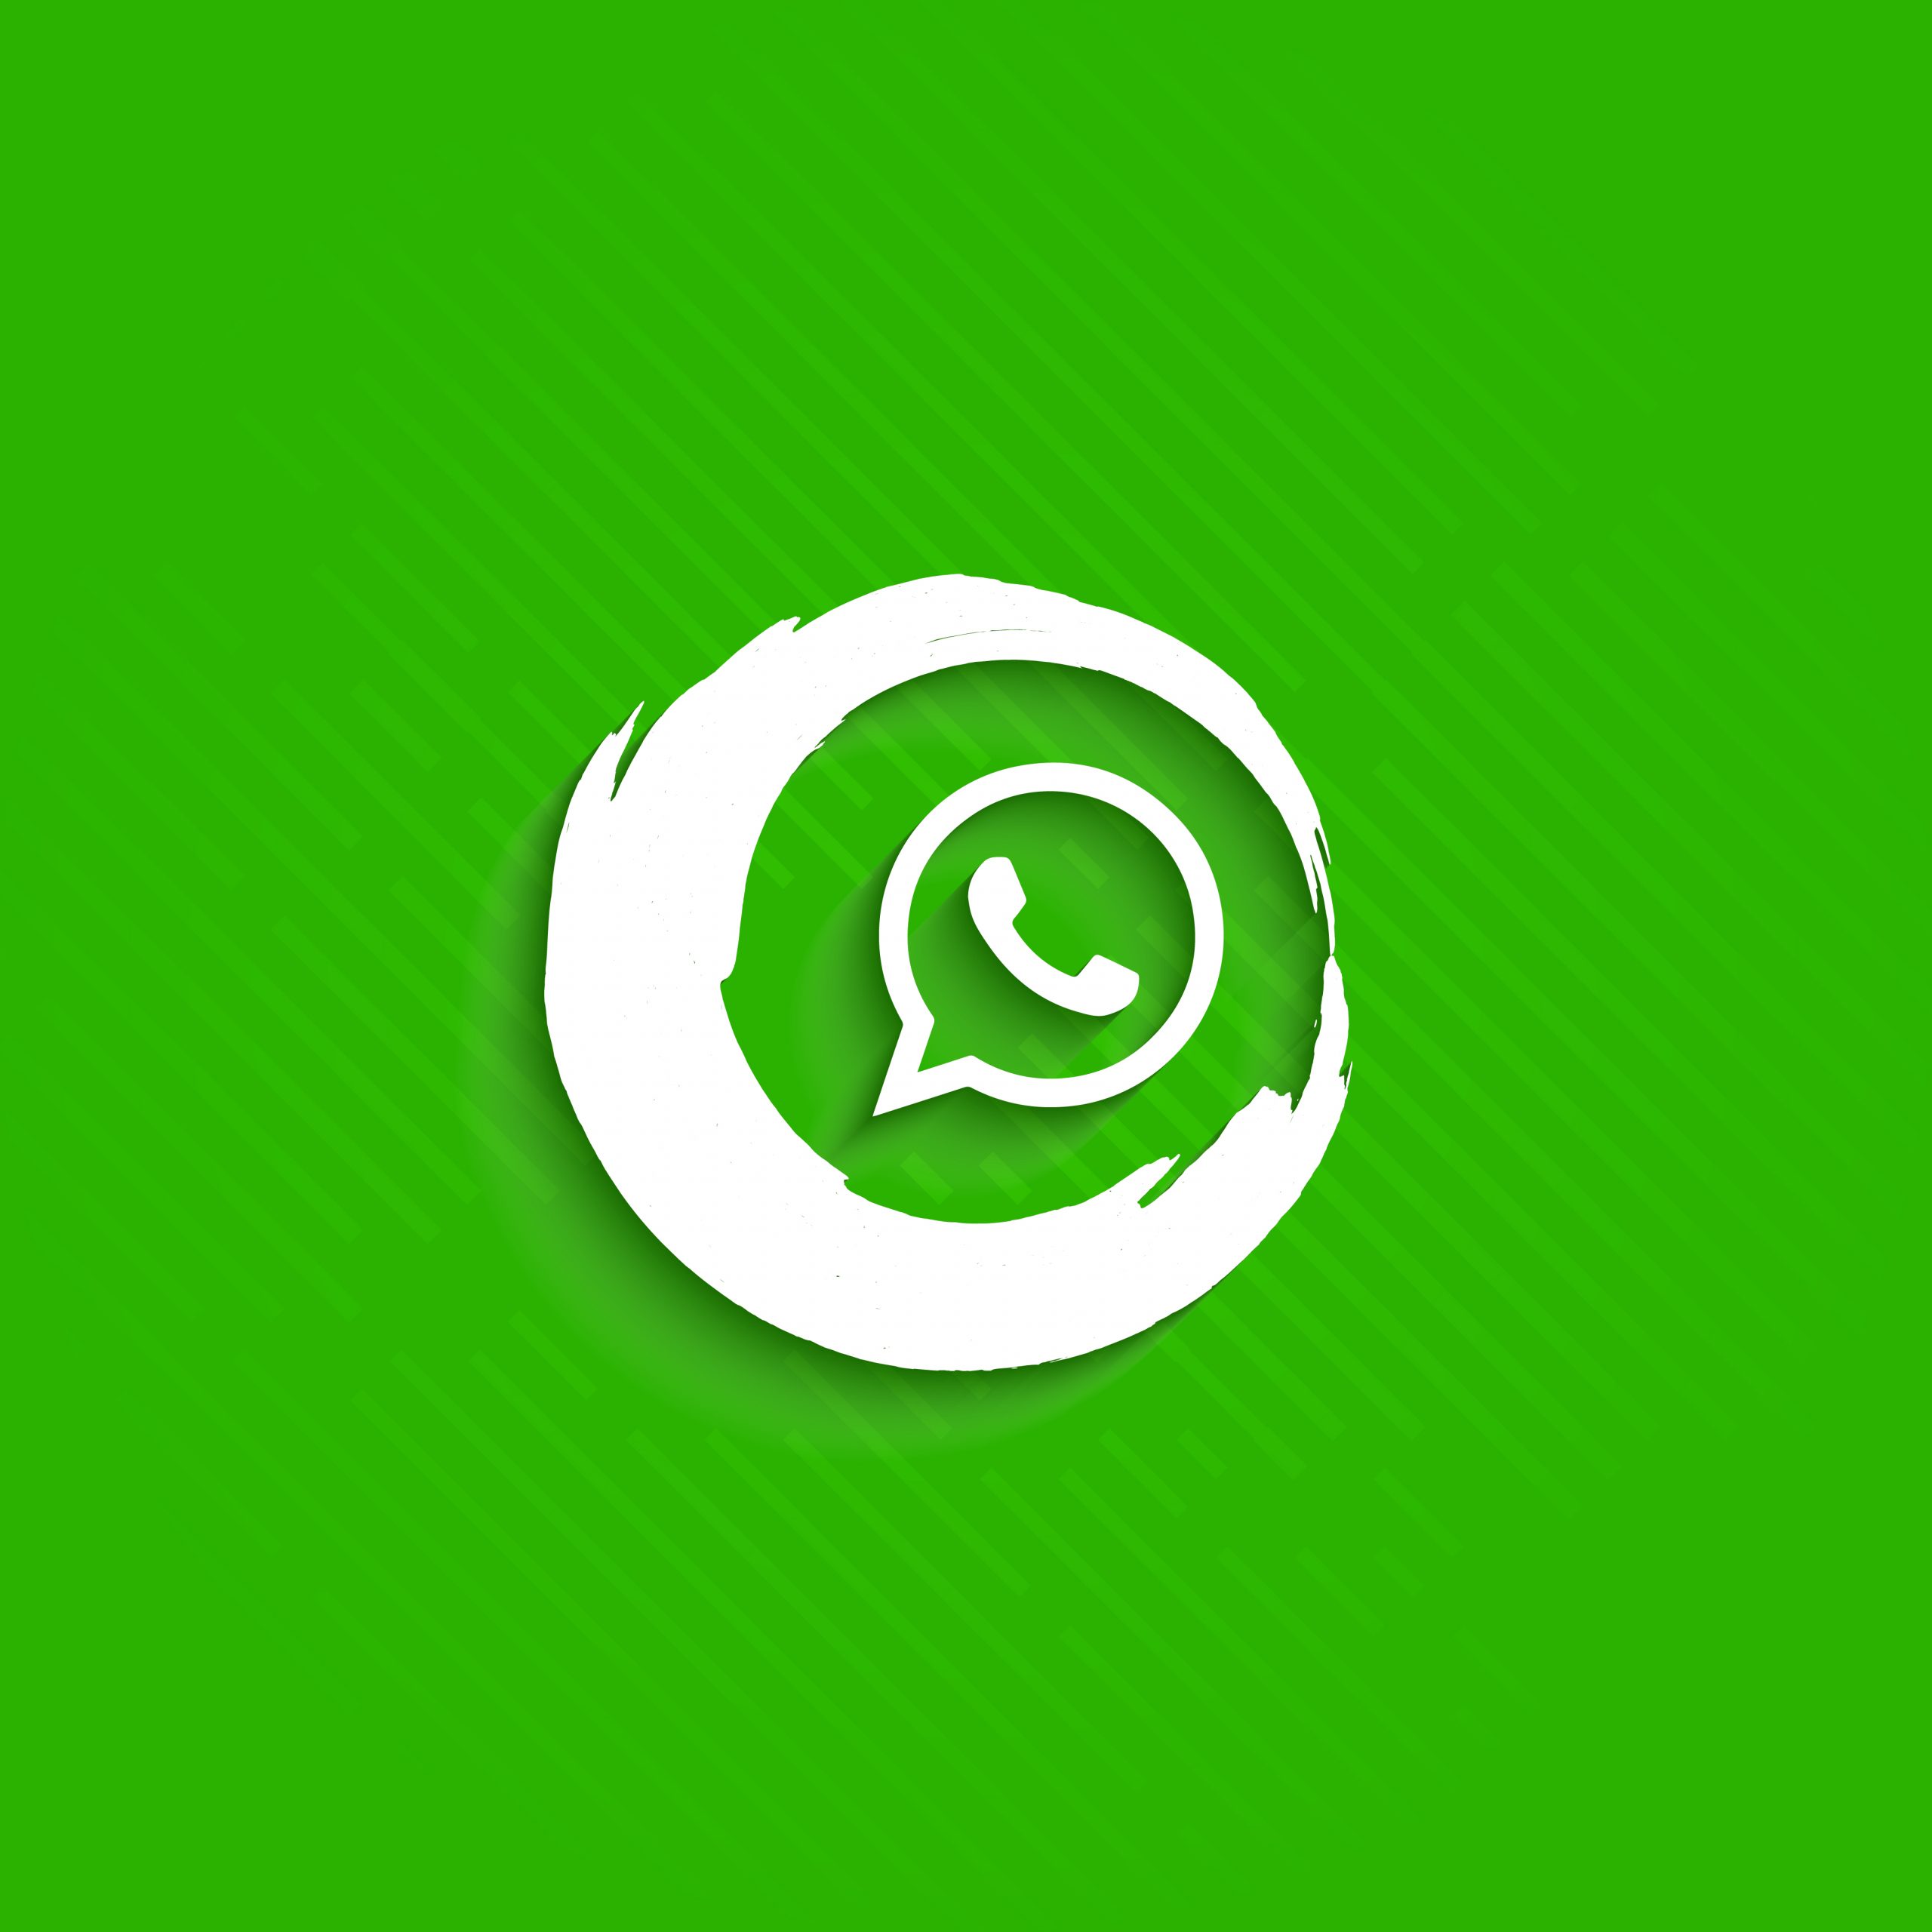 How to start marketing on WhatsApp